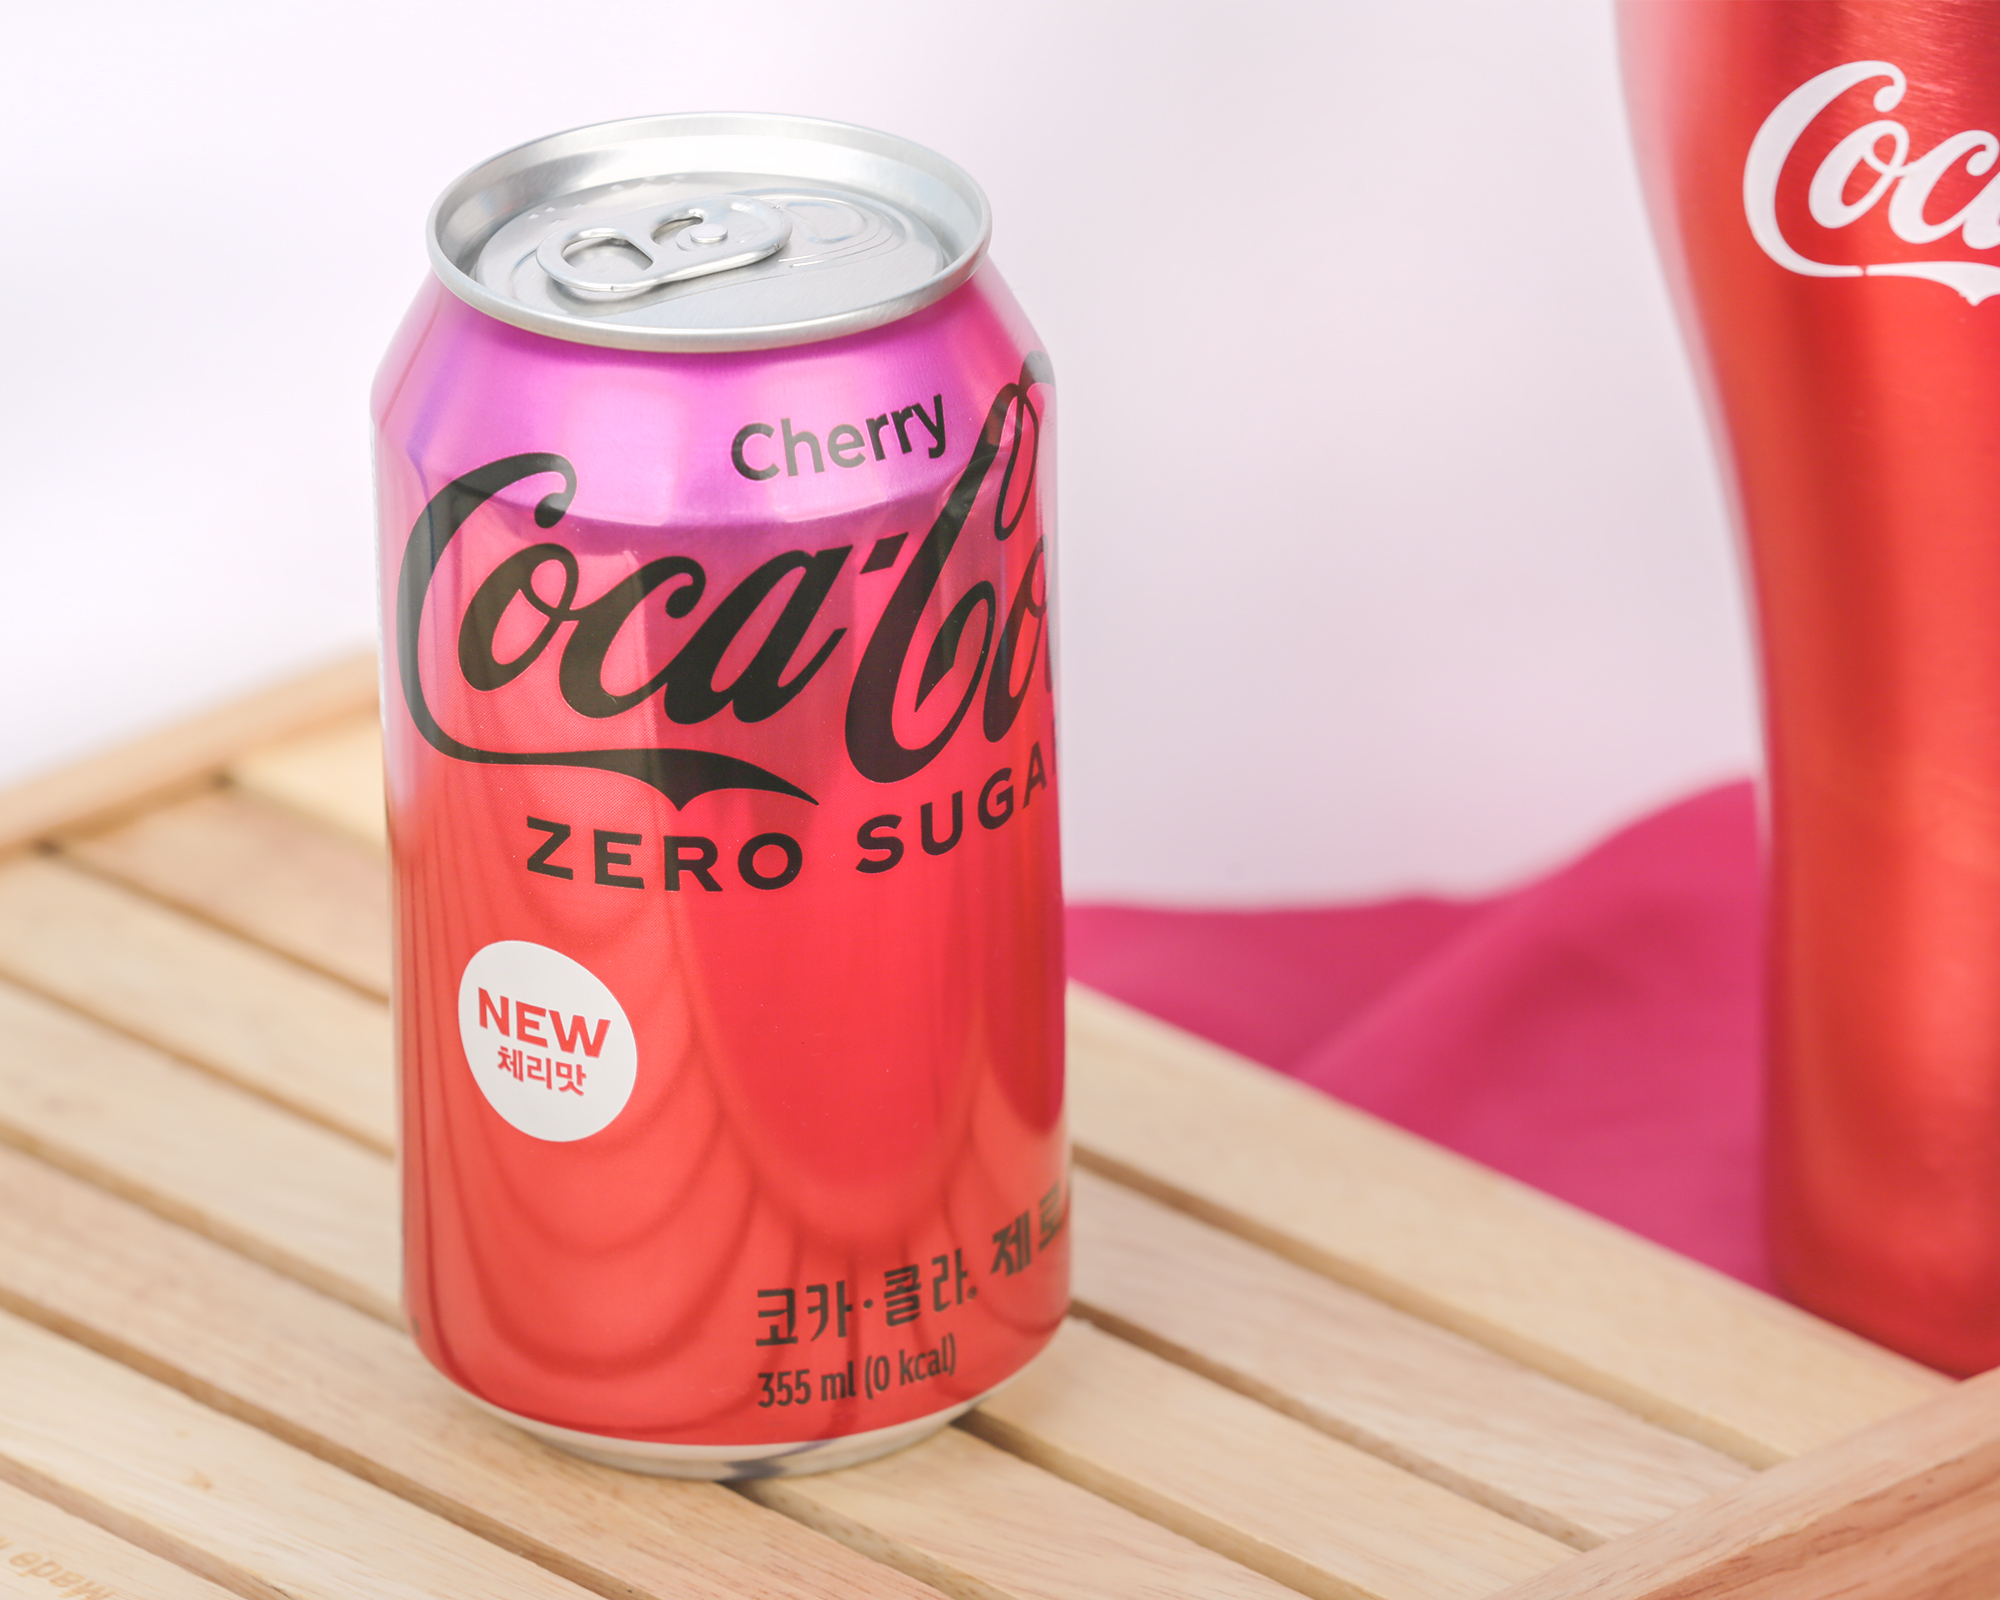 코카-콜라 제로 체리가 나무 받침대 위에 놓여 있다. 새로운 패키지 디자인에 ‘NEW 체리맛’이라는 글자가 새겨져 있다.